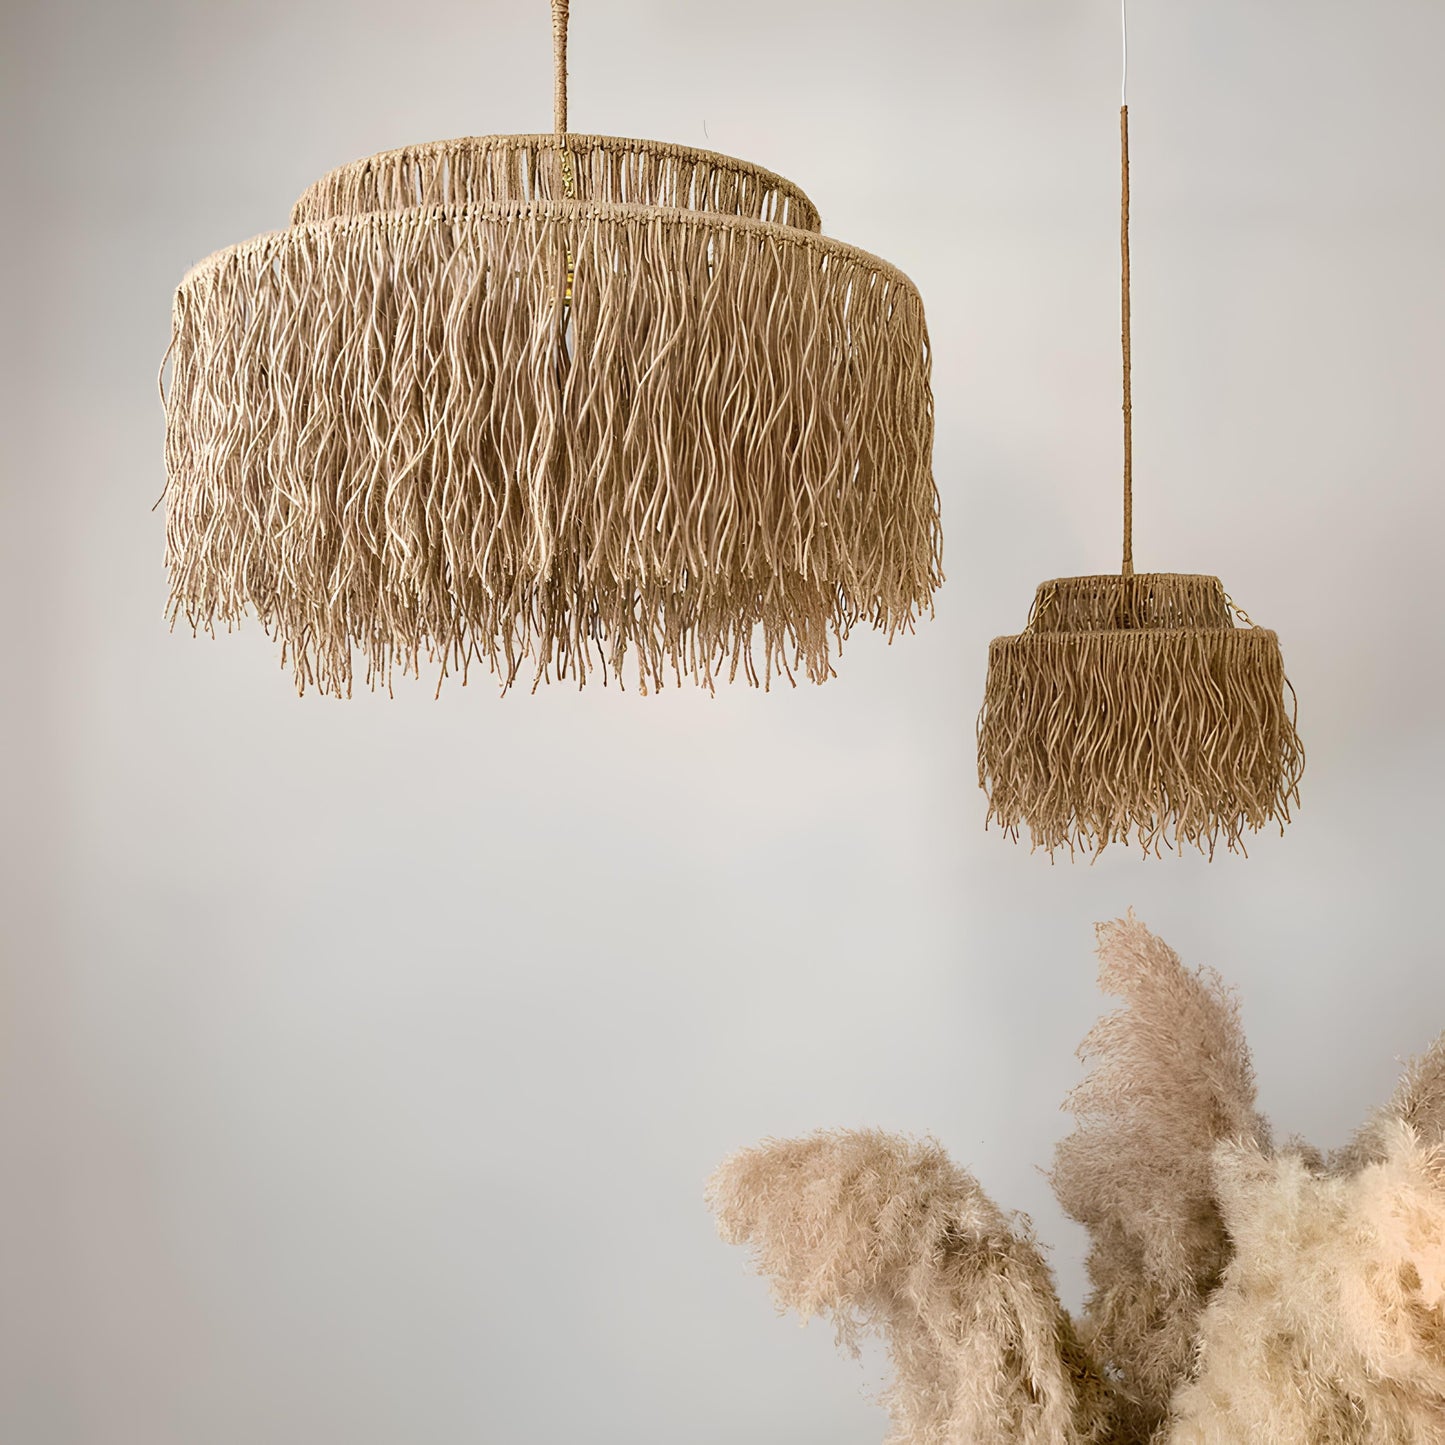 Bamboo Hanging lamp for Living Room | Rattan Pendant light | Cane ceiling light - Dasya - Akway